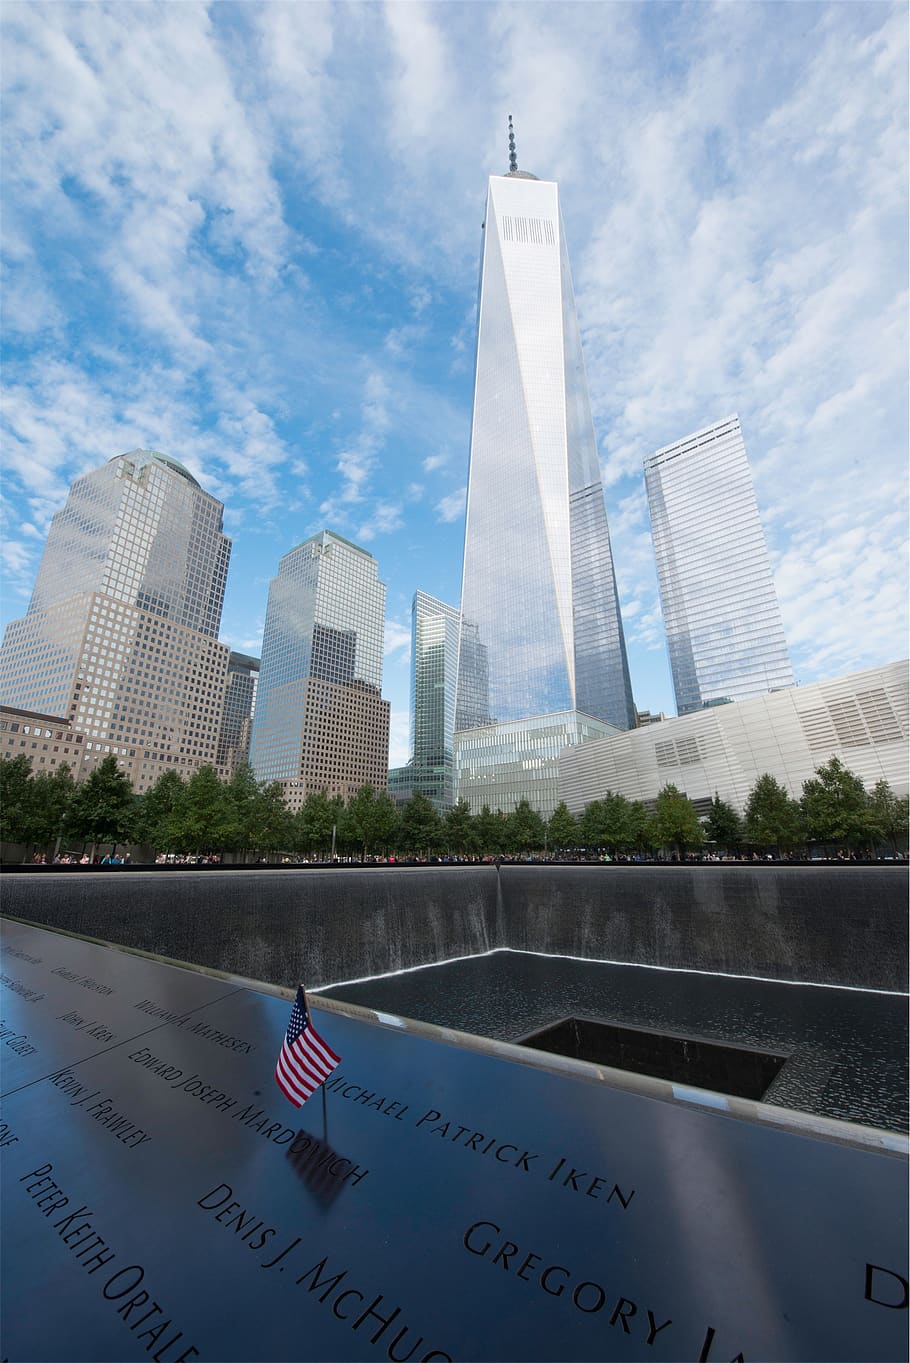 911, Nueva York, ciudad, torres gemelas, americano, bandera, Estados Unidos, edificios, arquitectura, memorial